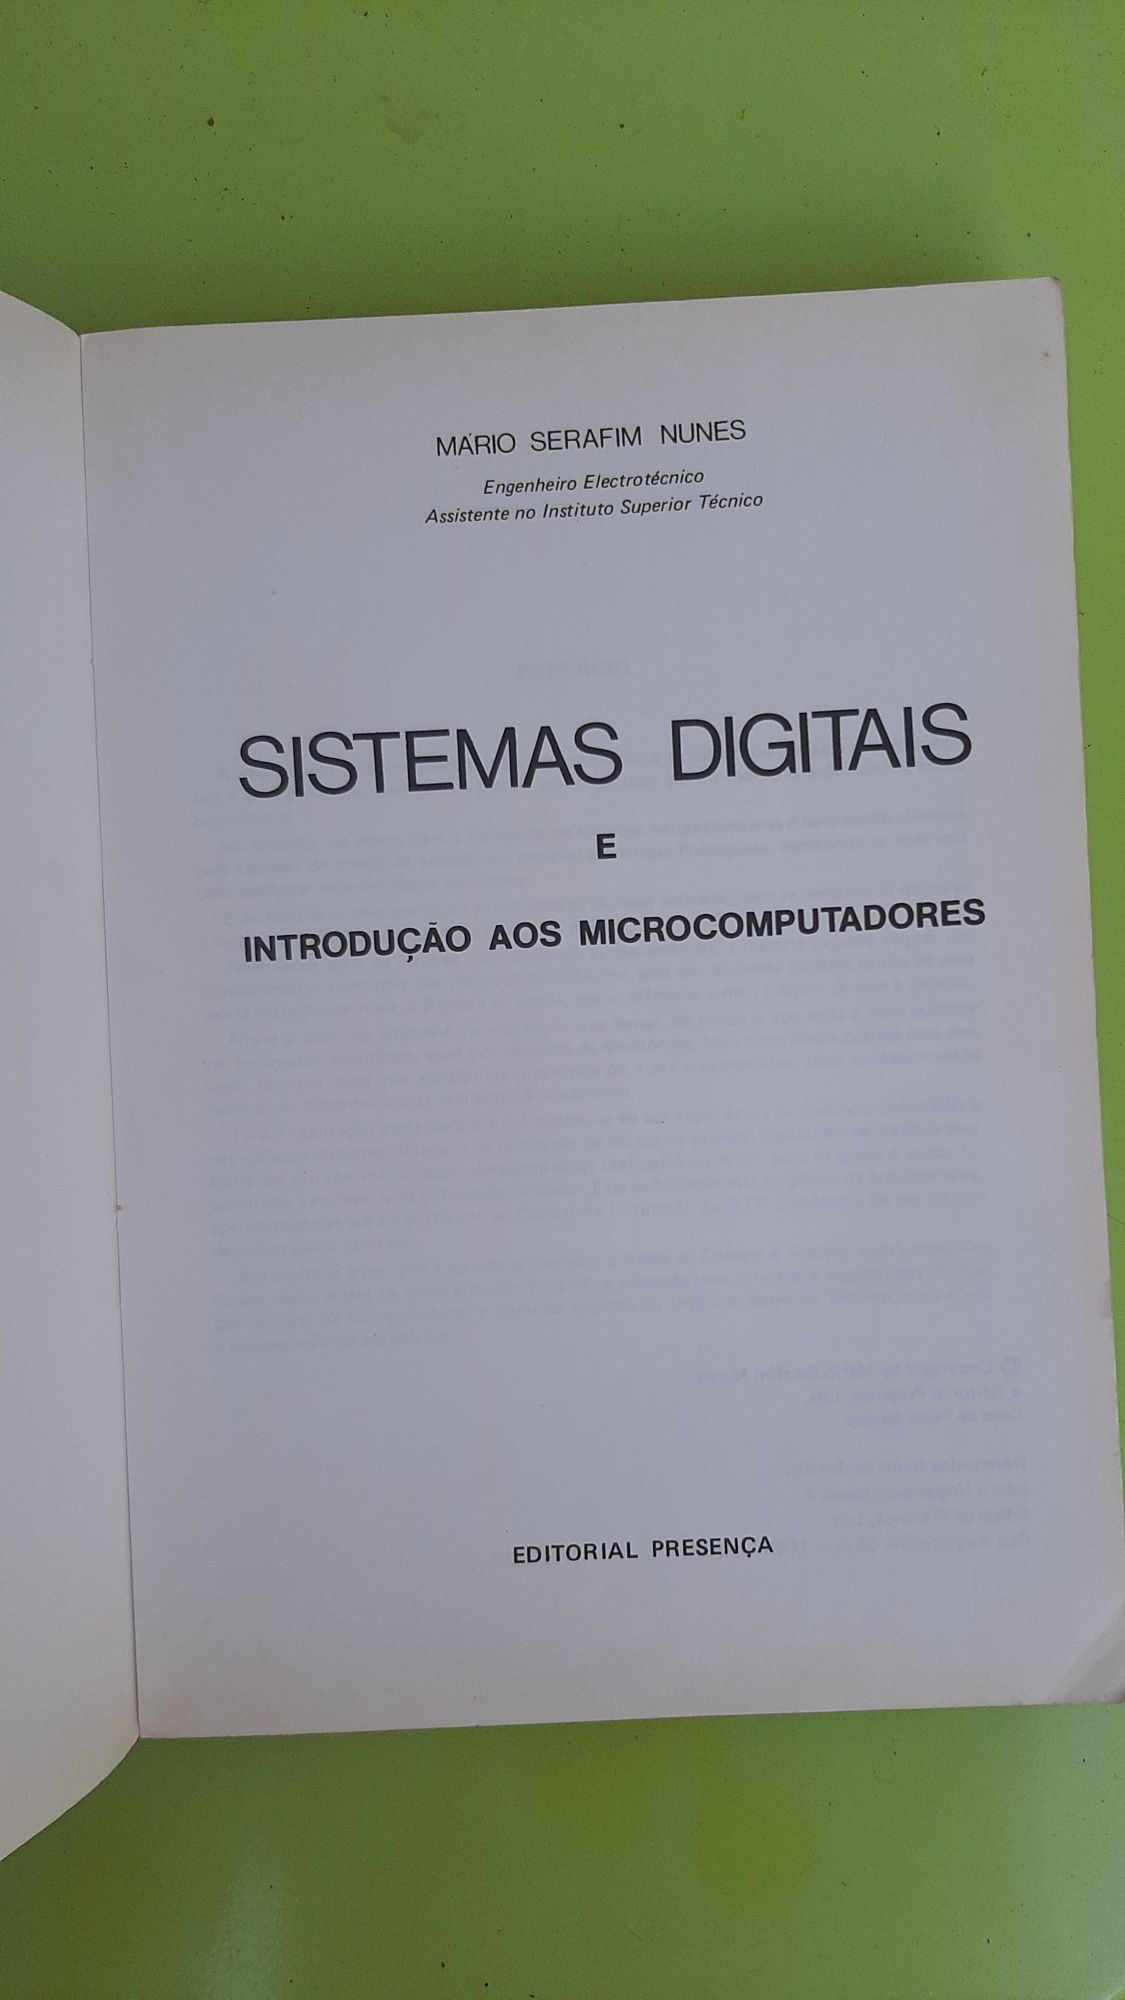 Livro "Sistemas digitais"